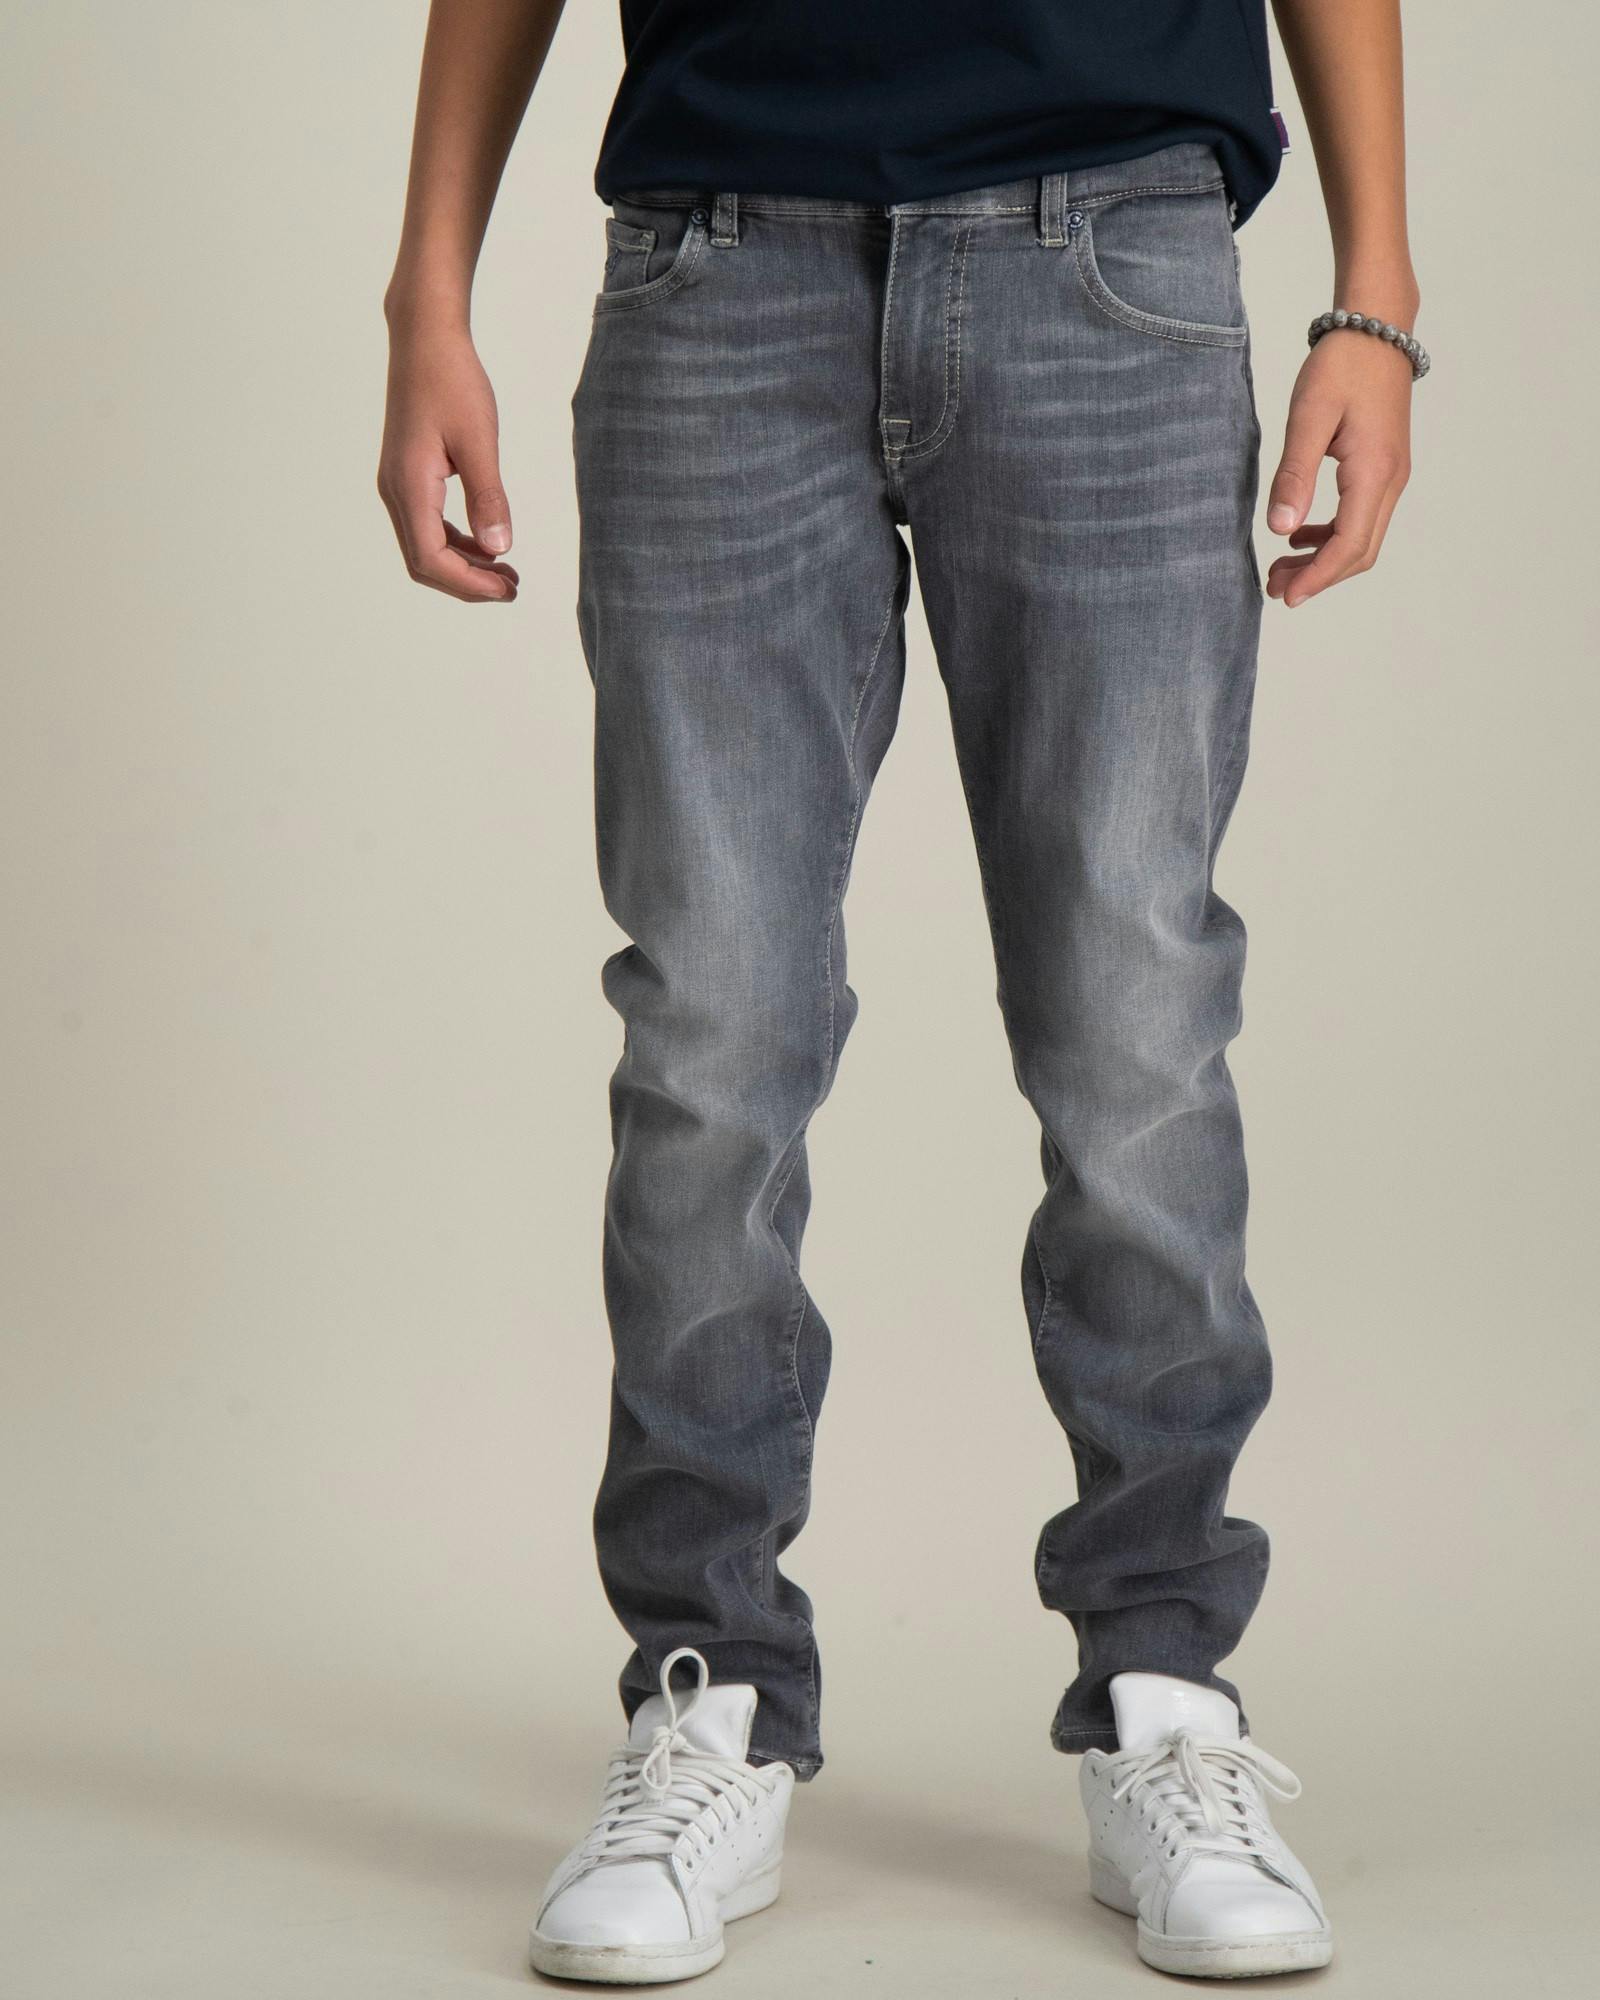 Essentials Strummer slim fit jeans